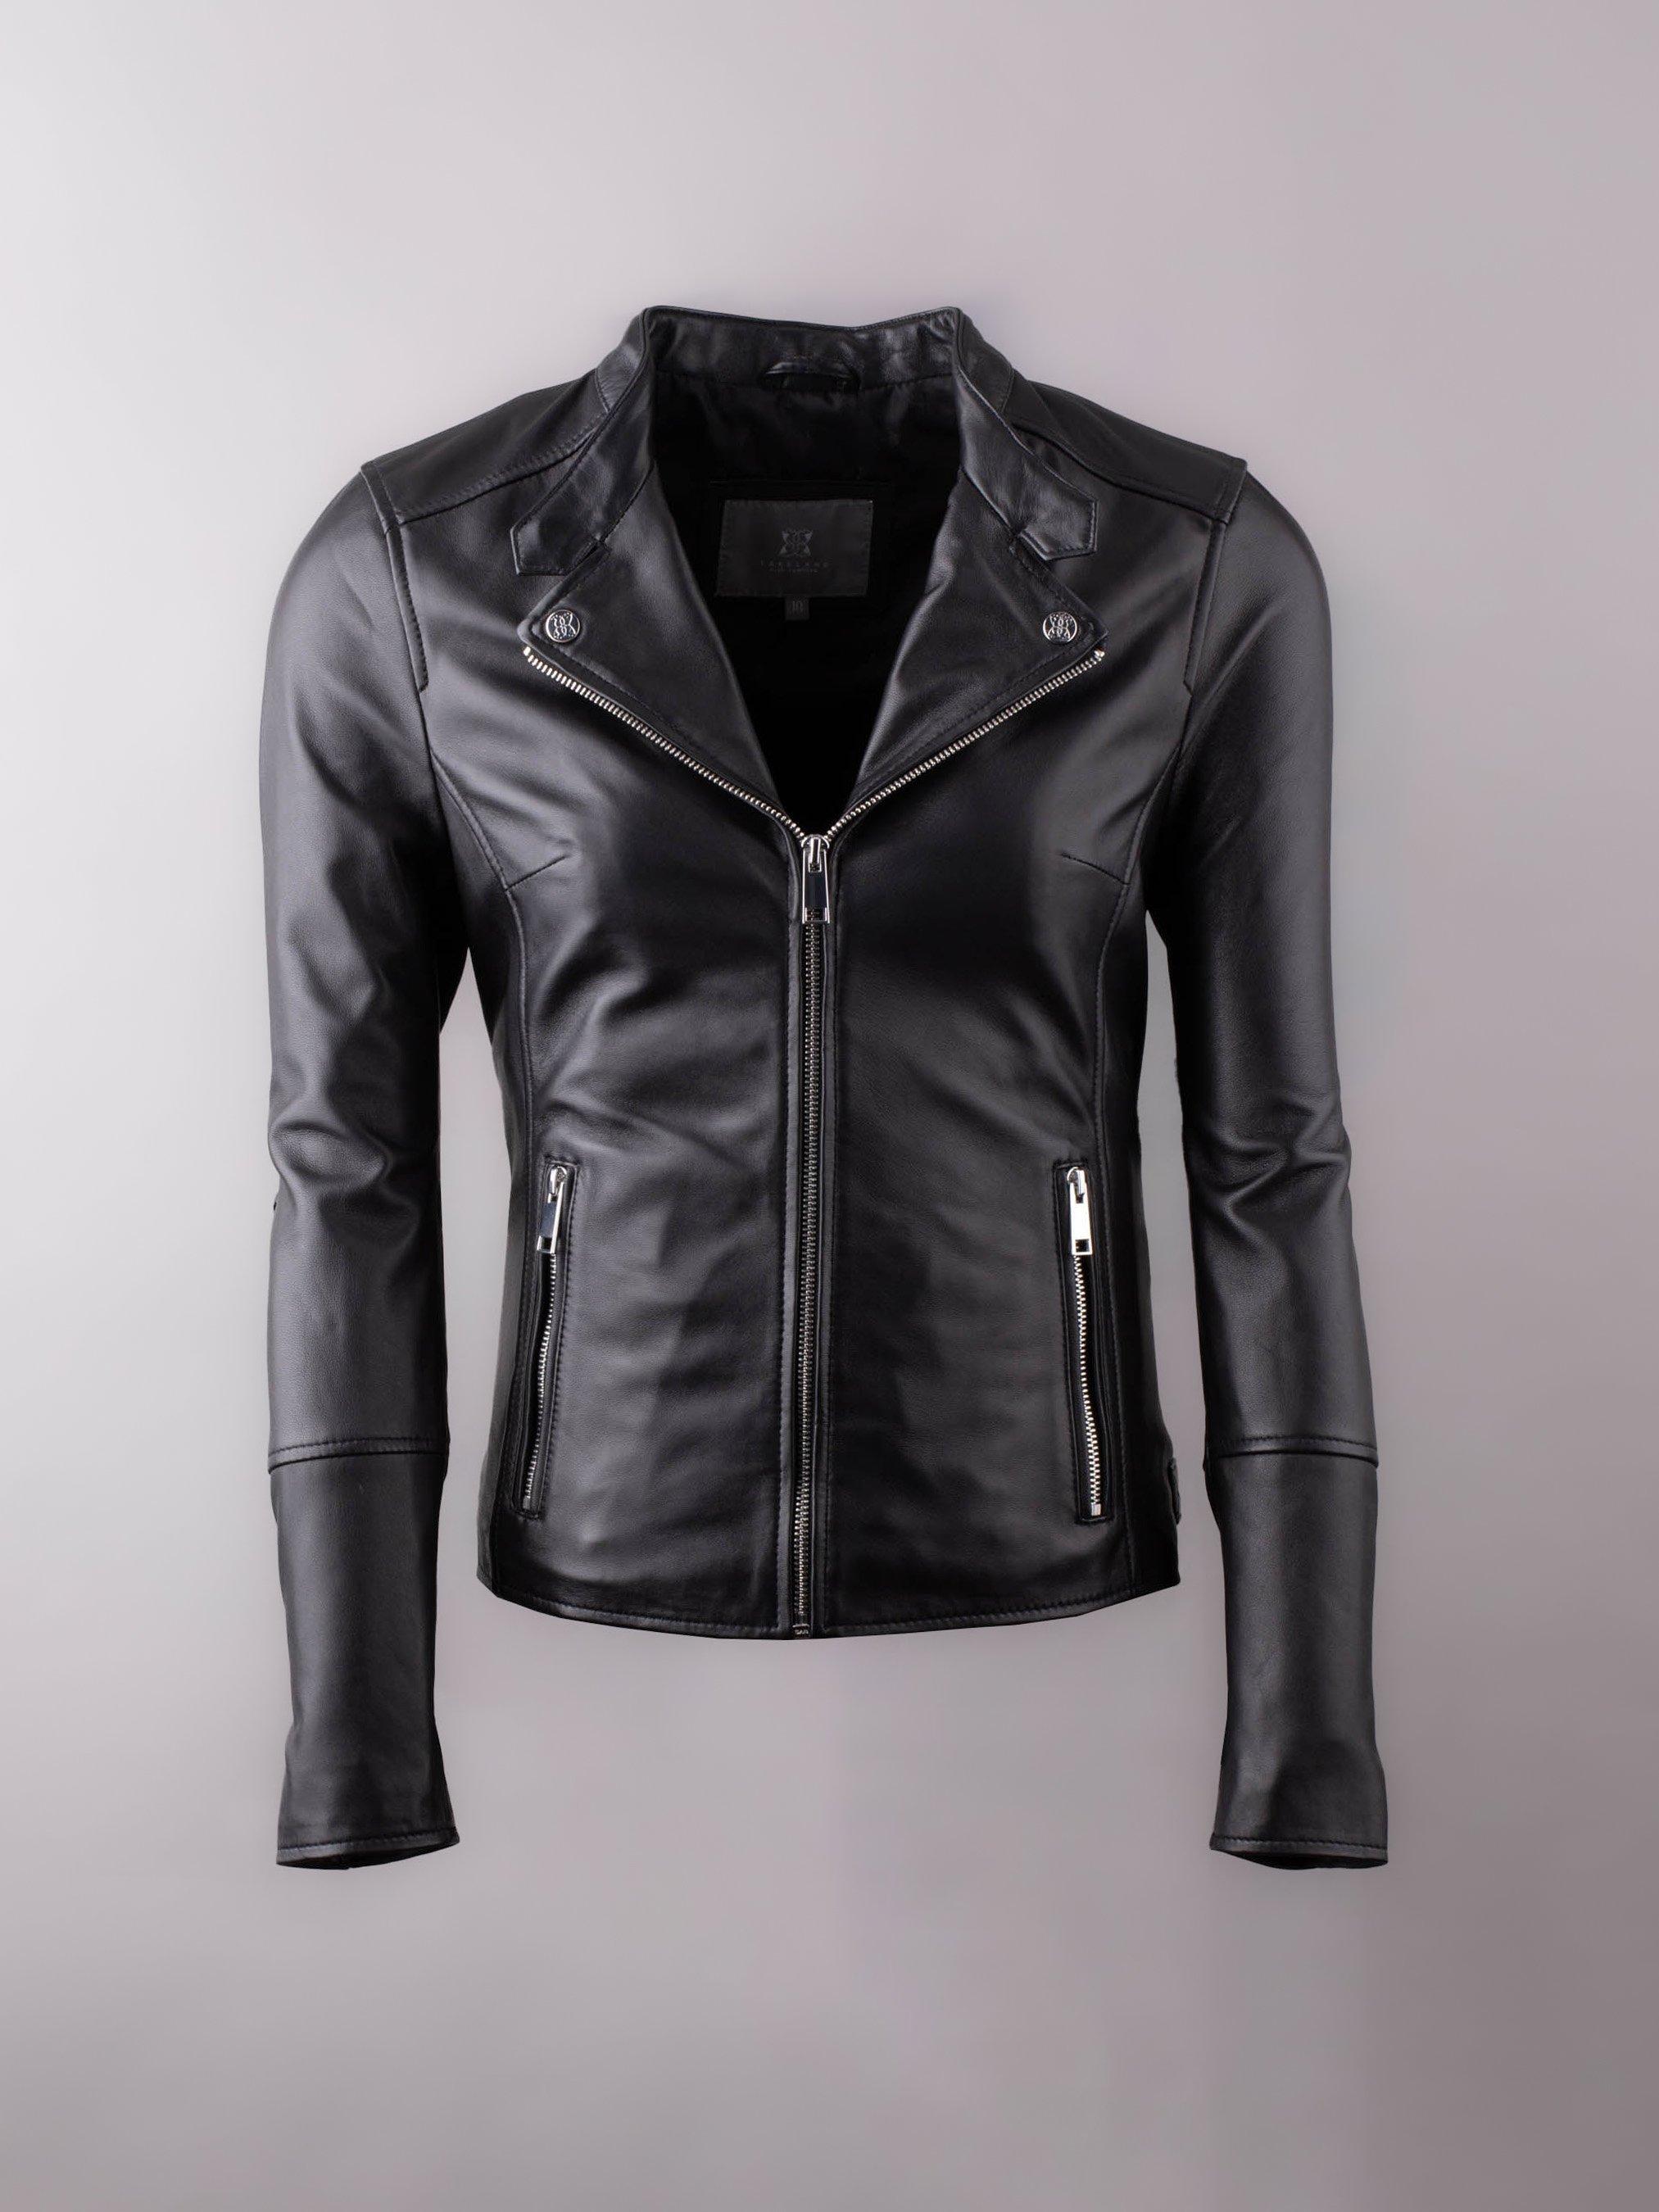 Кожаная байкерская куртка Nateby с центральной молнией Lakeland Leather, черный